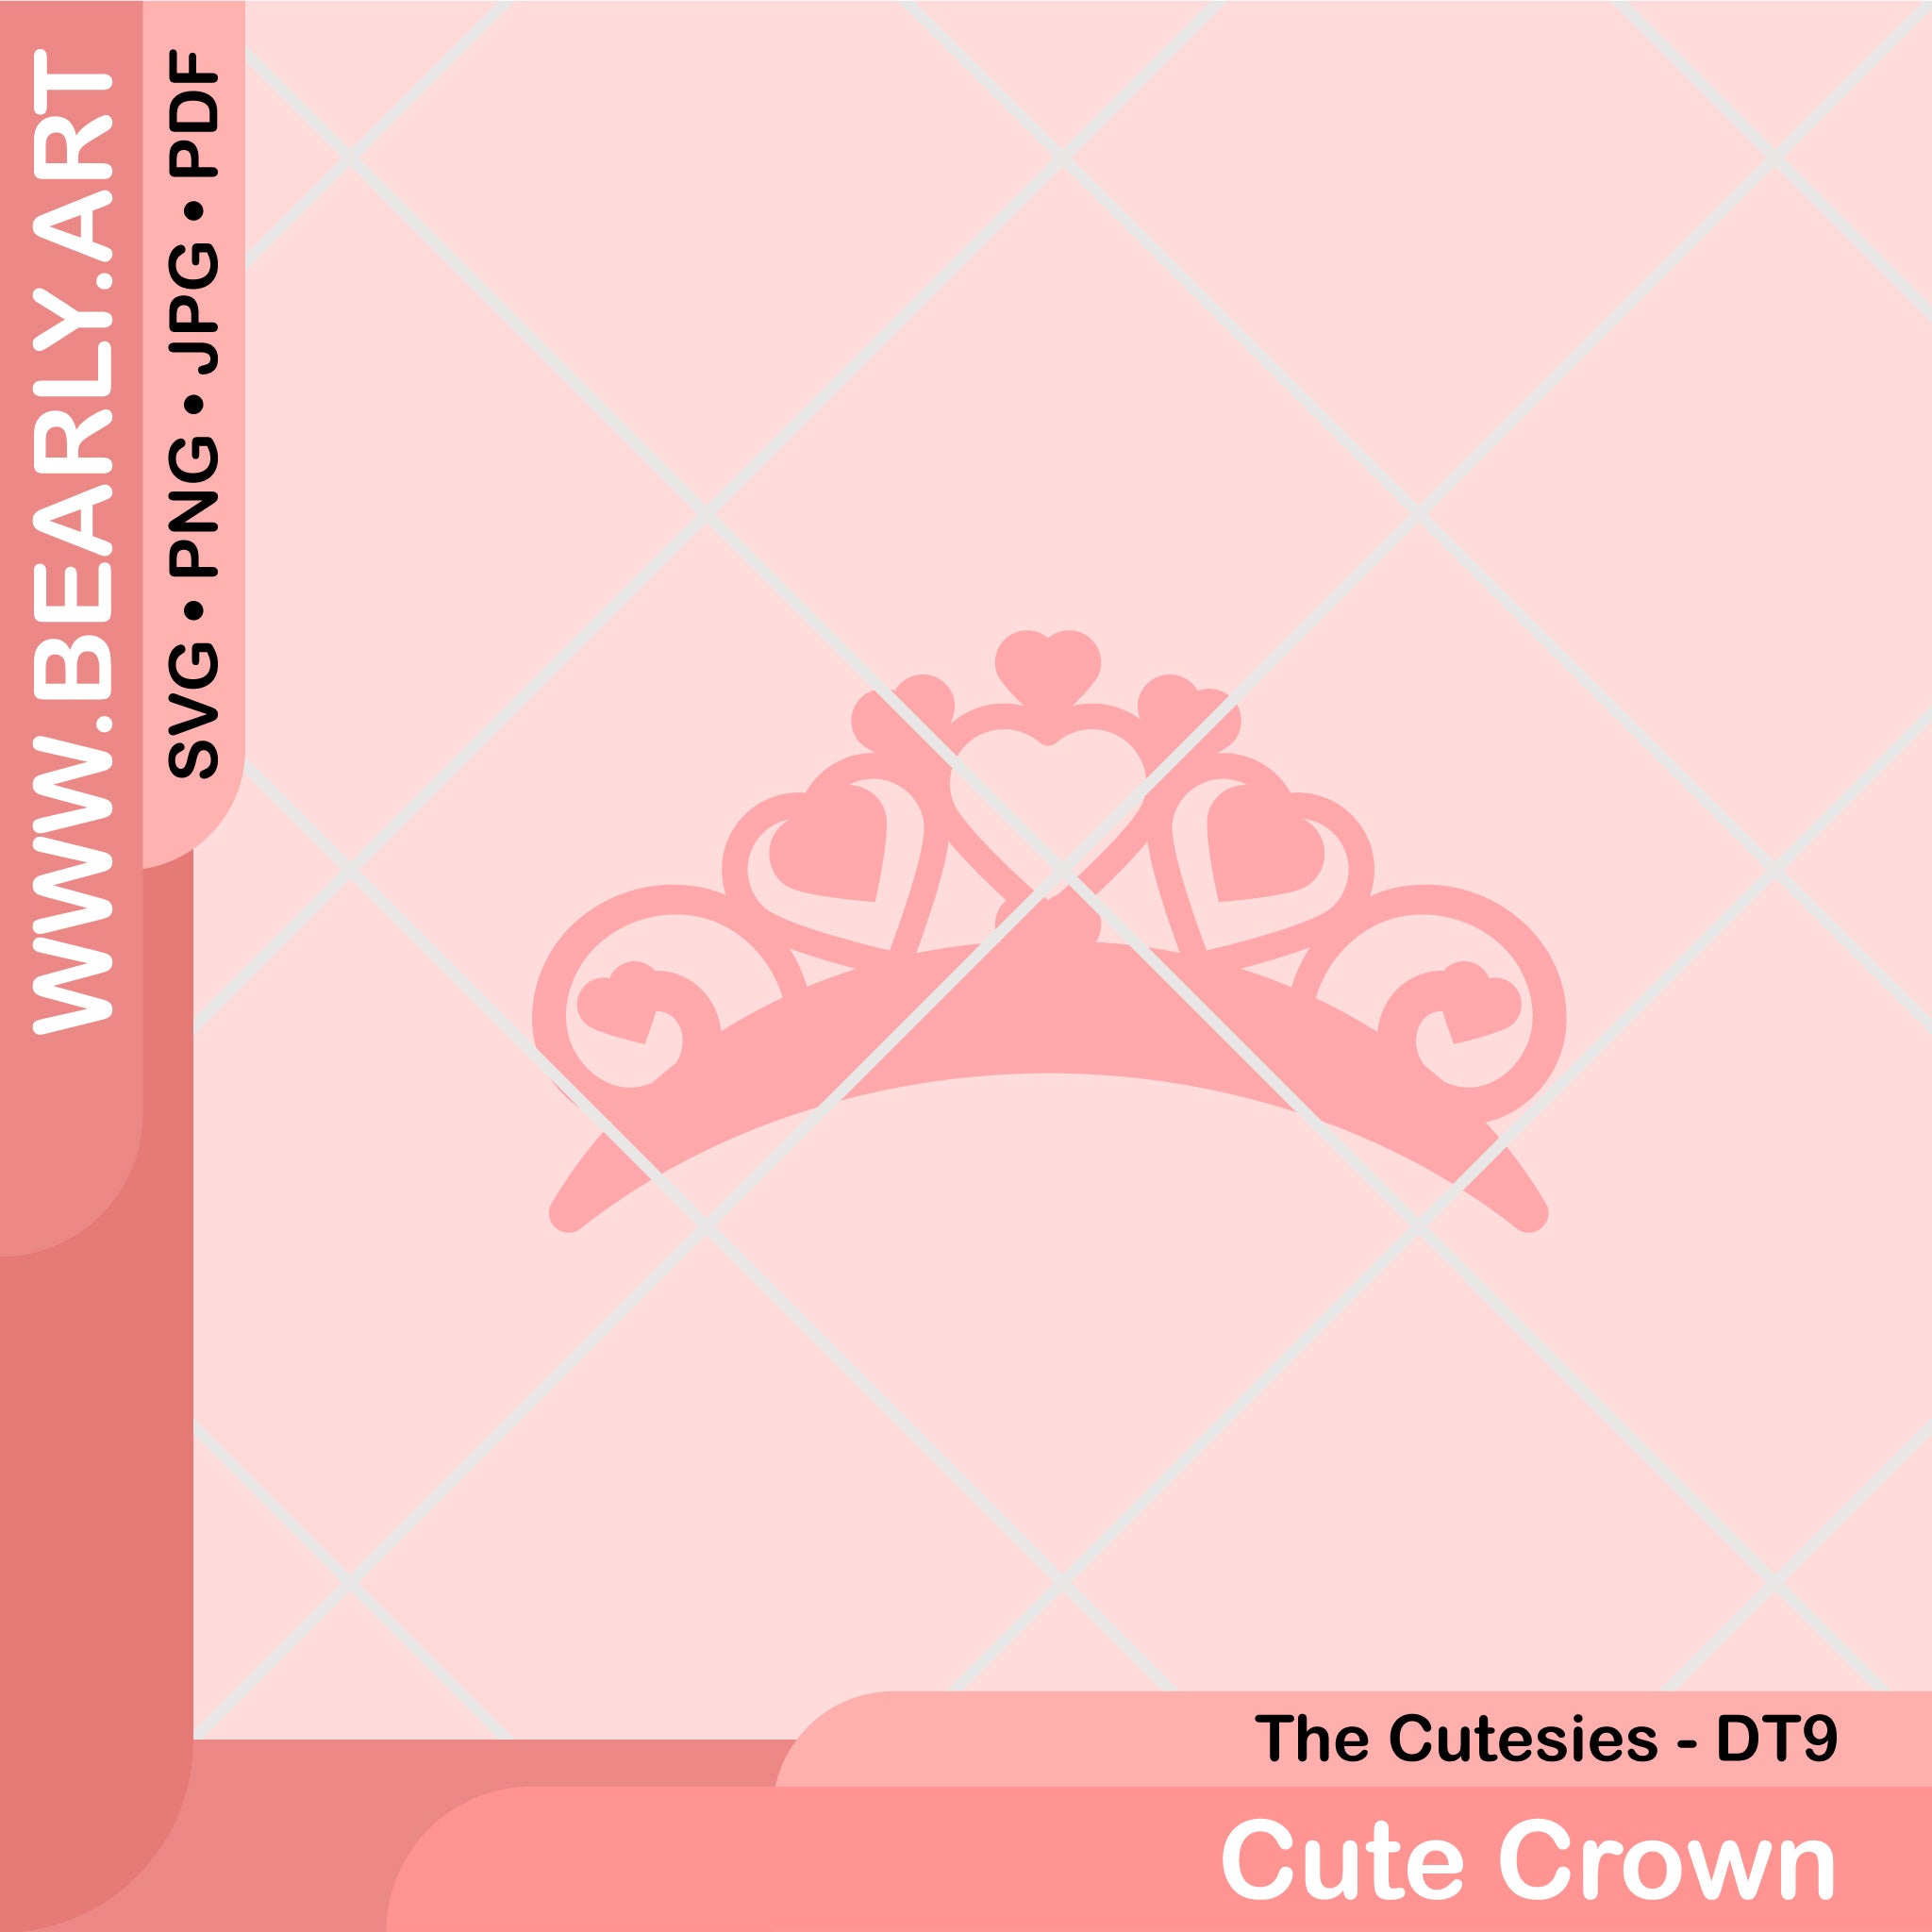 Cute Crown - Design Team 9 - The Cutesies